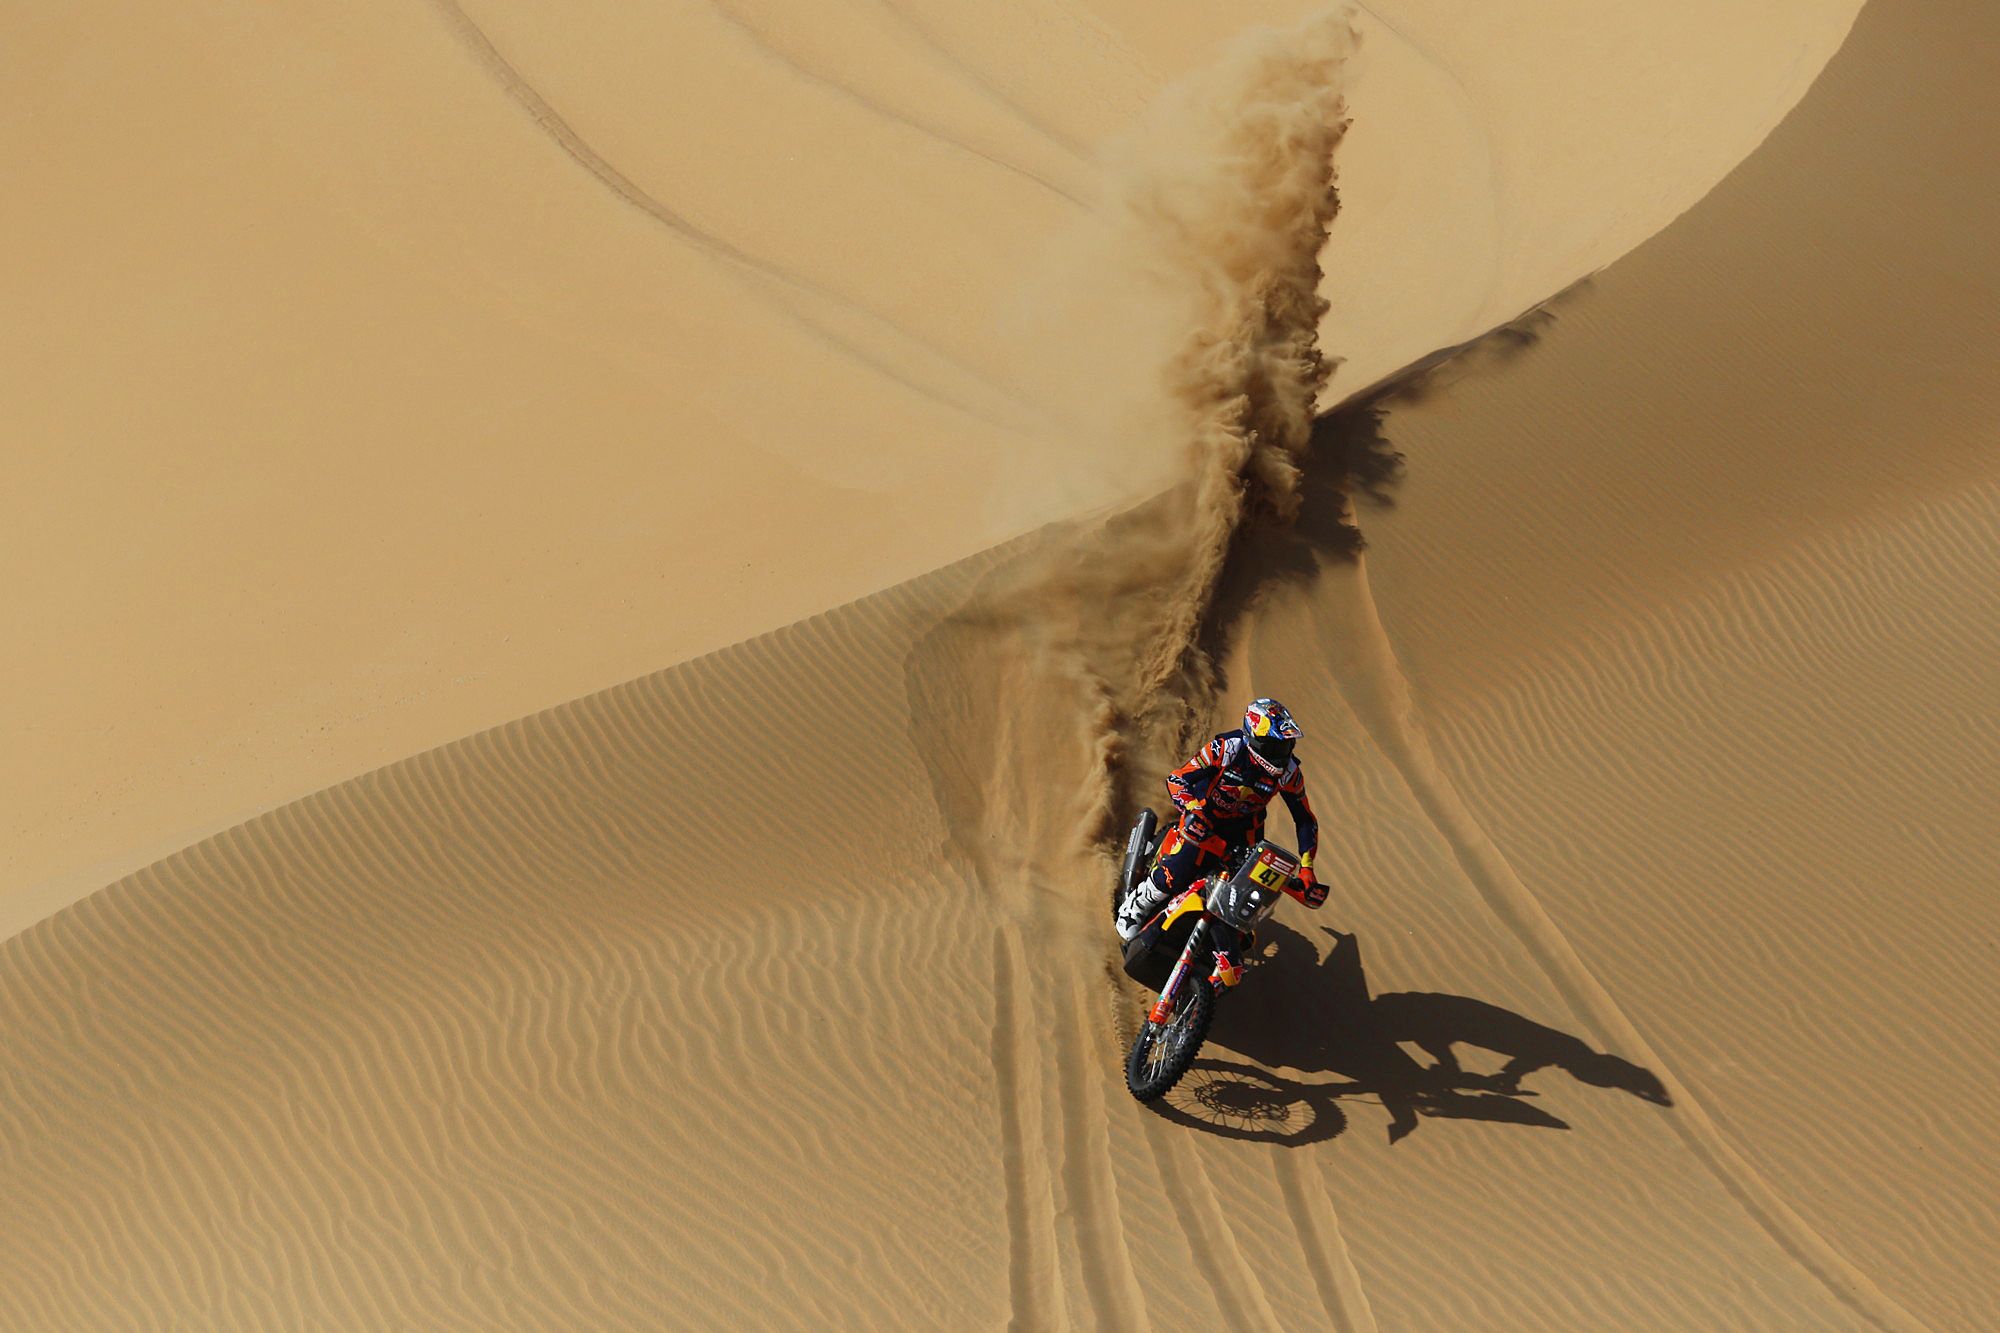 Dakar Rally (163444136).jpg